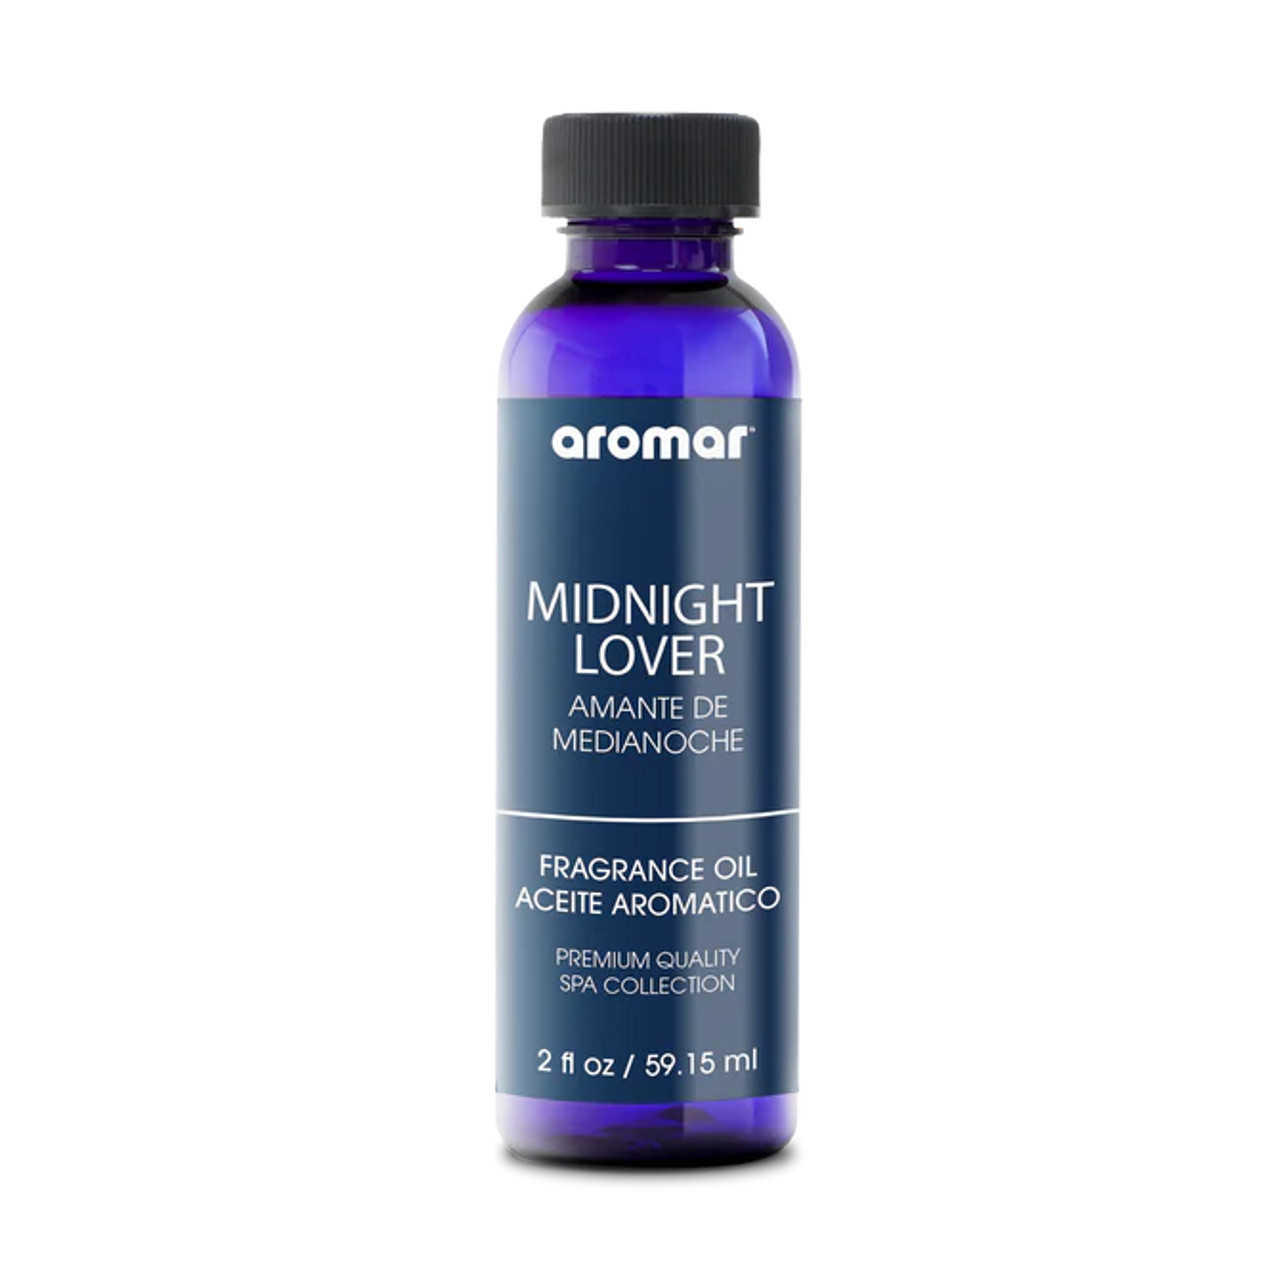 Midnight Lover Aromar premium quality Burning fragrance oil